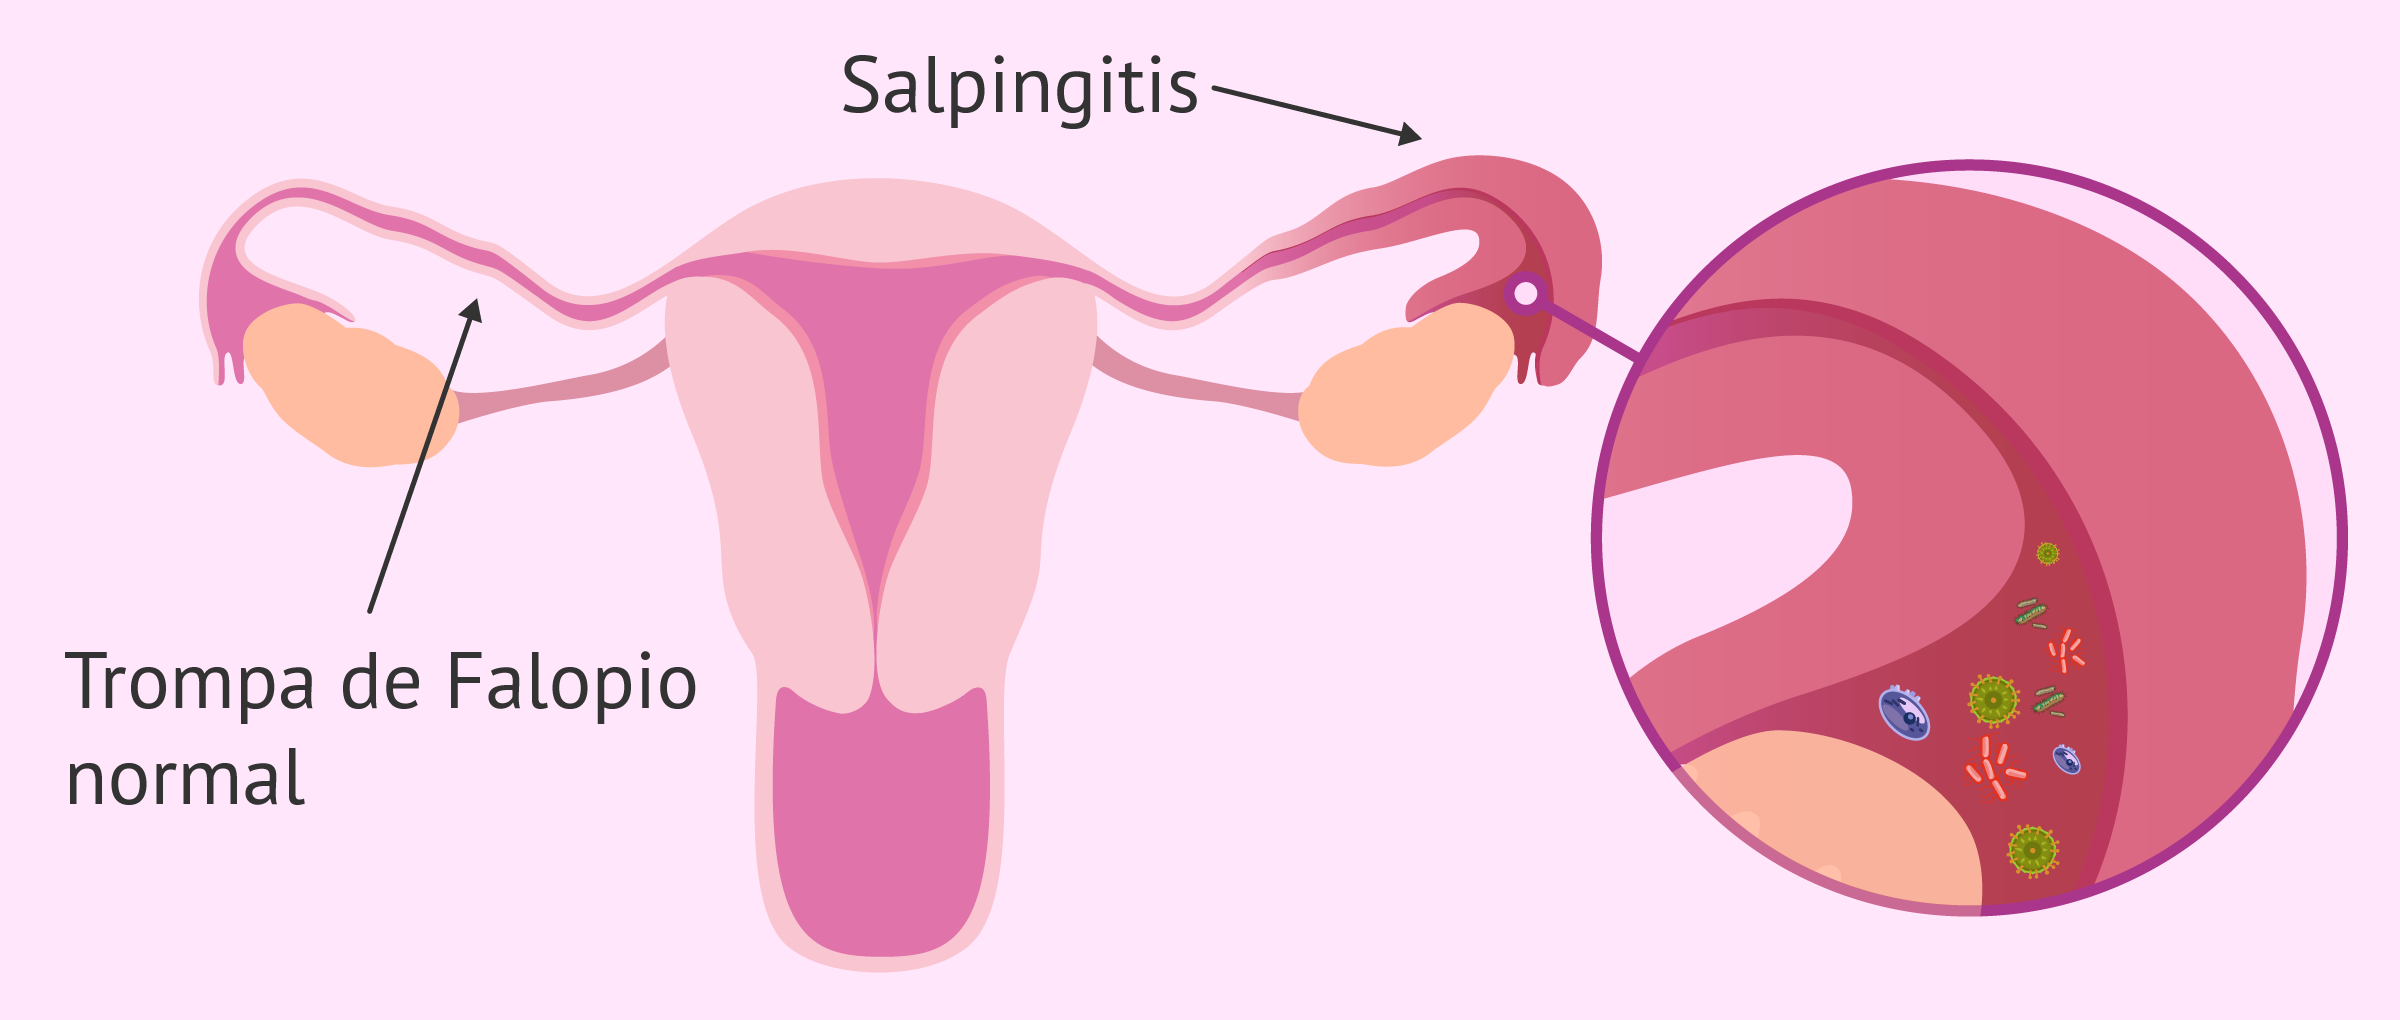 Salpingitis por infección bacteriana